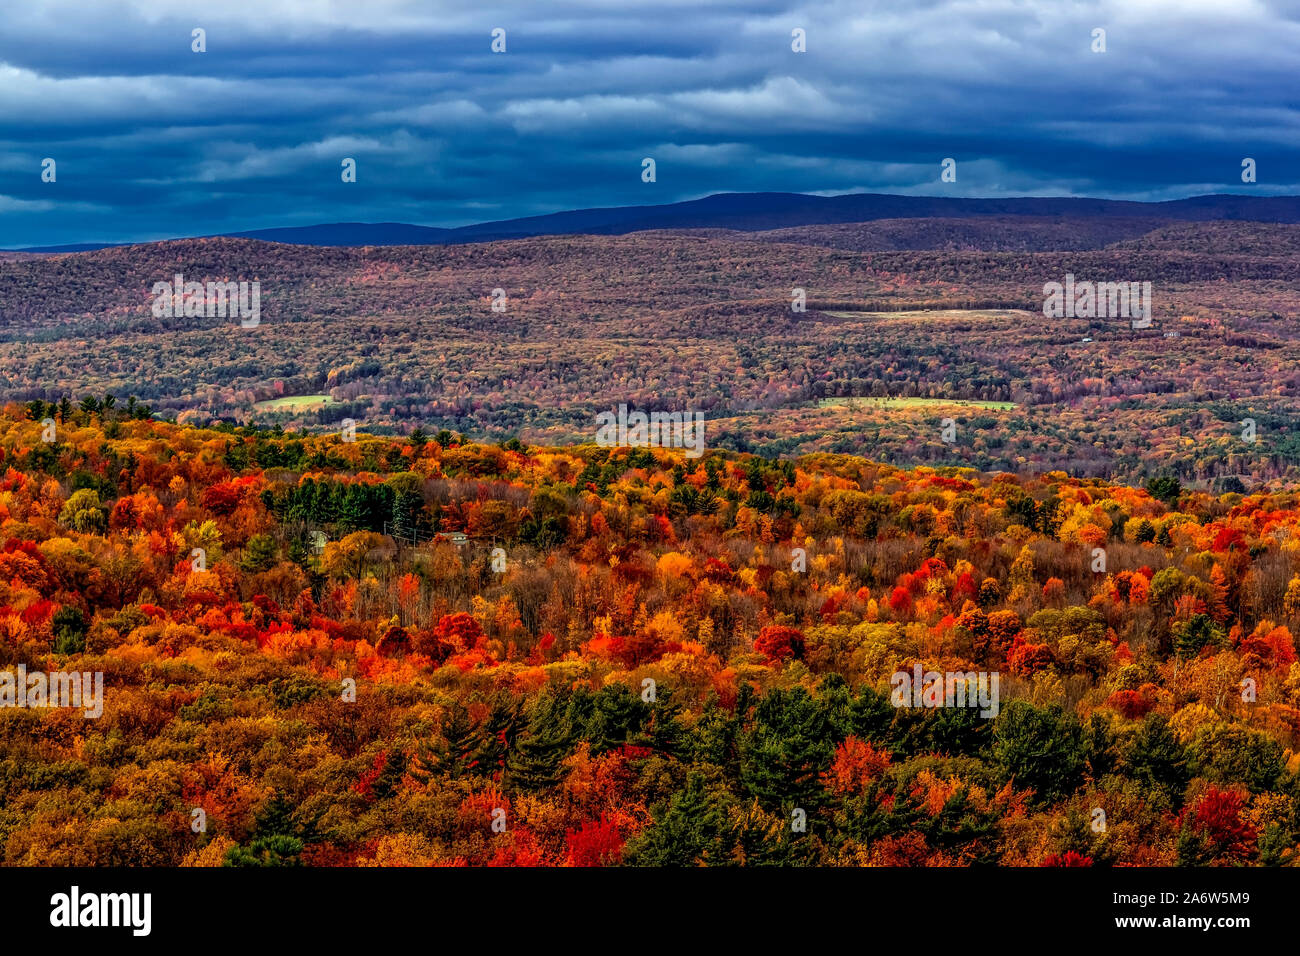 Hudson Valley NY Automne -Vue aérienne à l'atmosphère chaleureuse et couleurs vives de l'automne feuillage en pointe l'état de New York. Banque D'Images